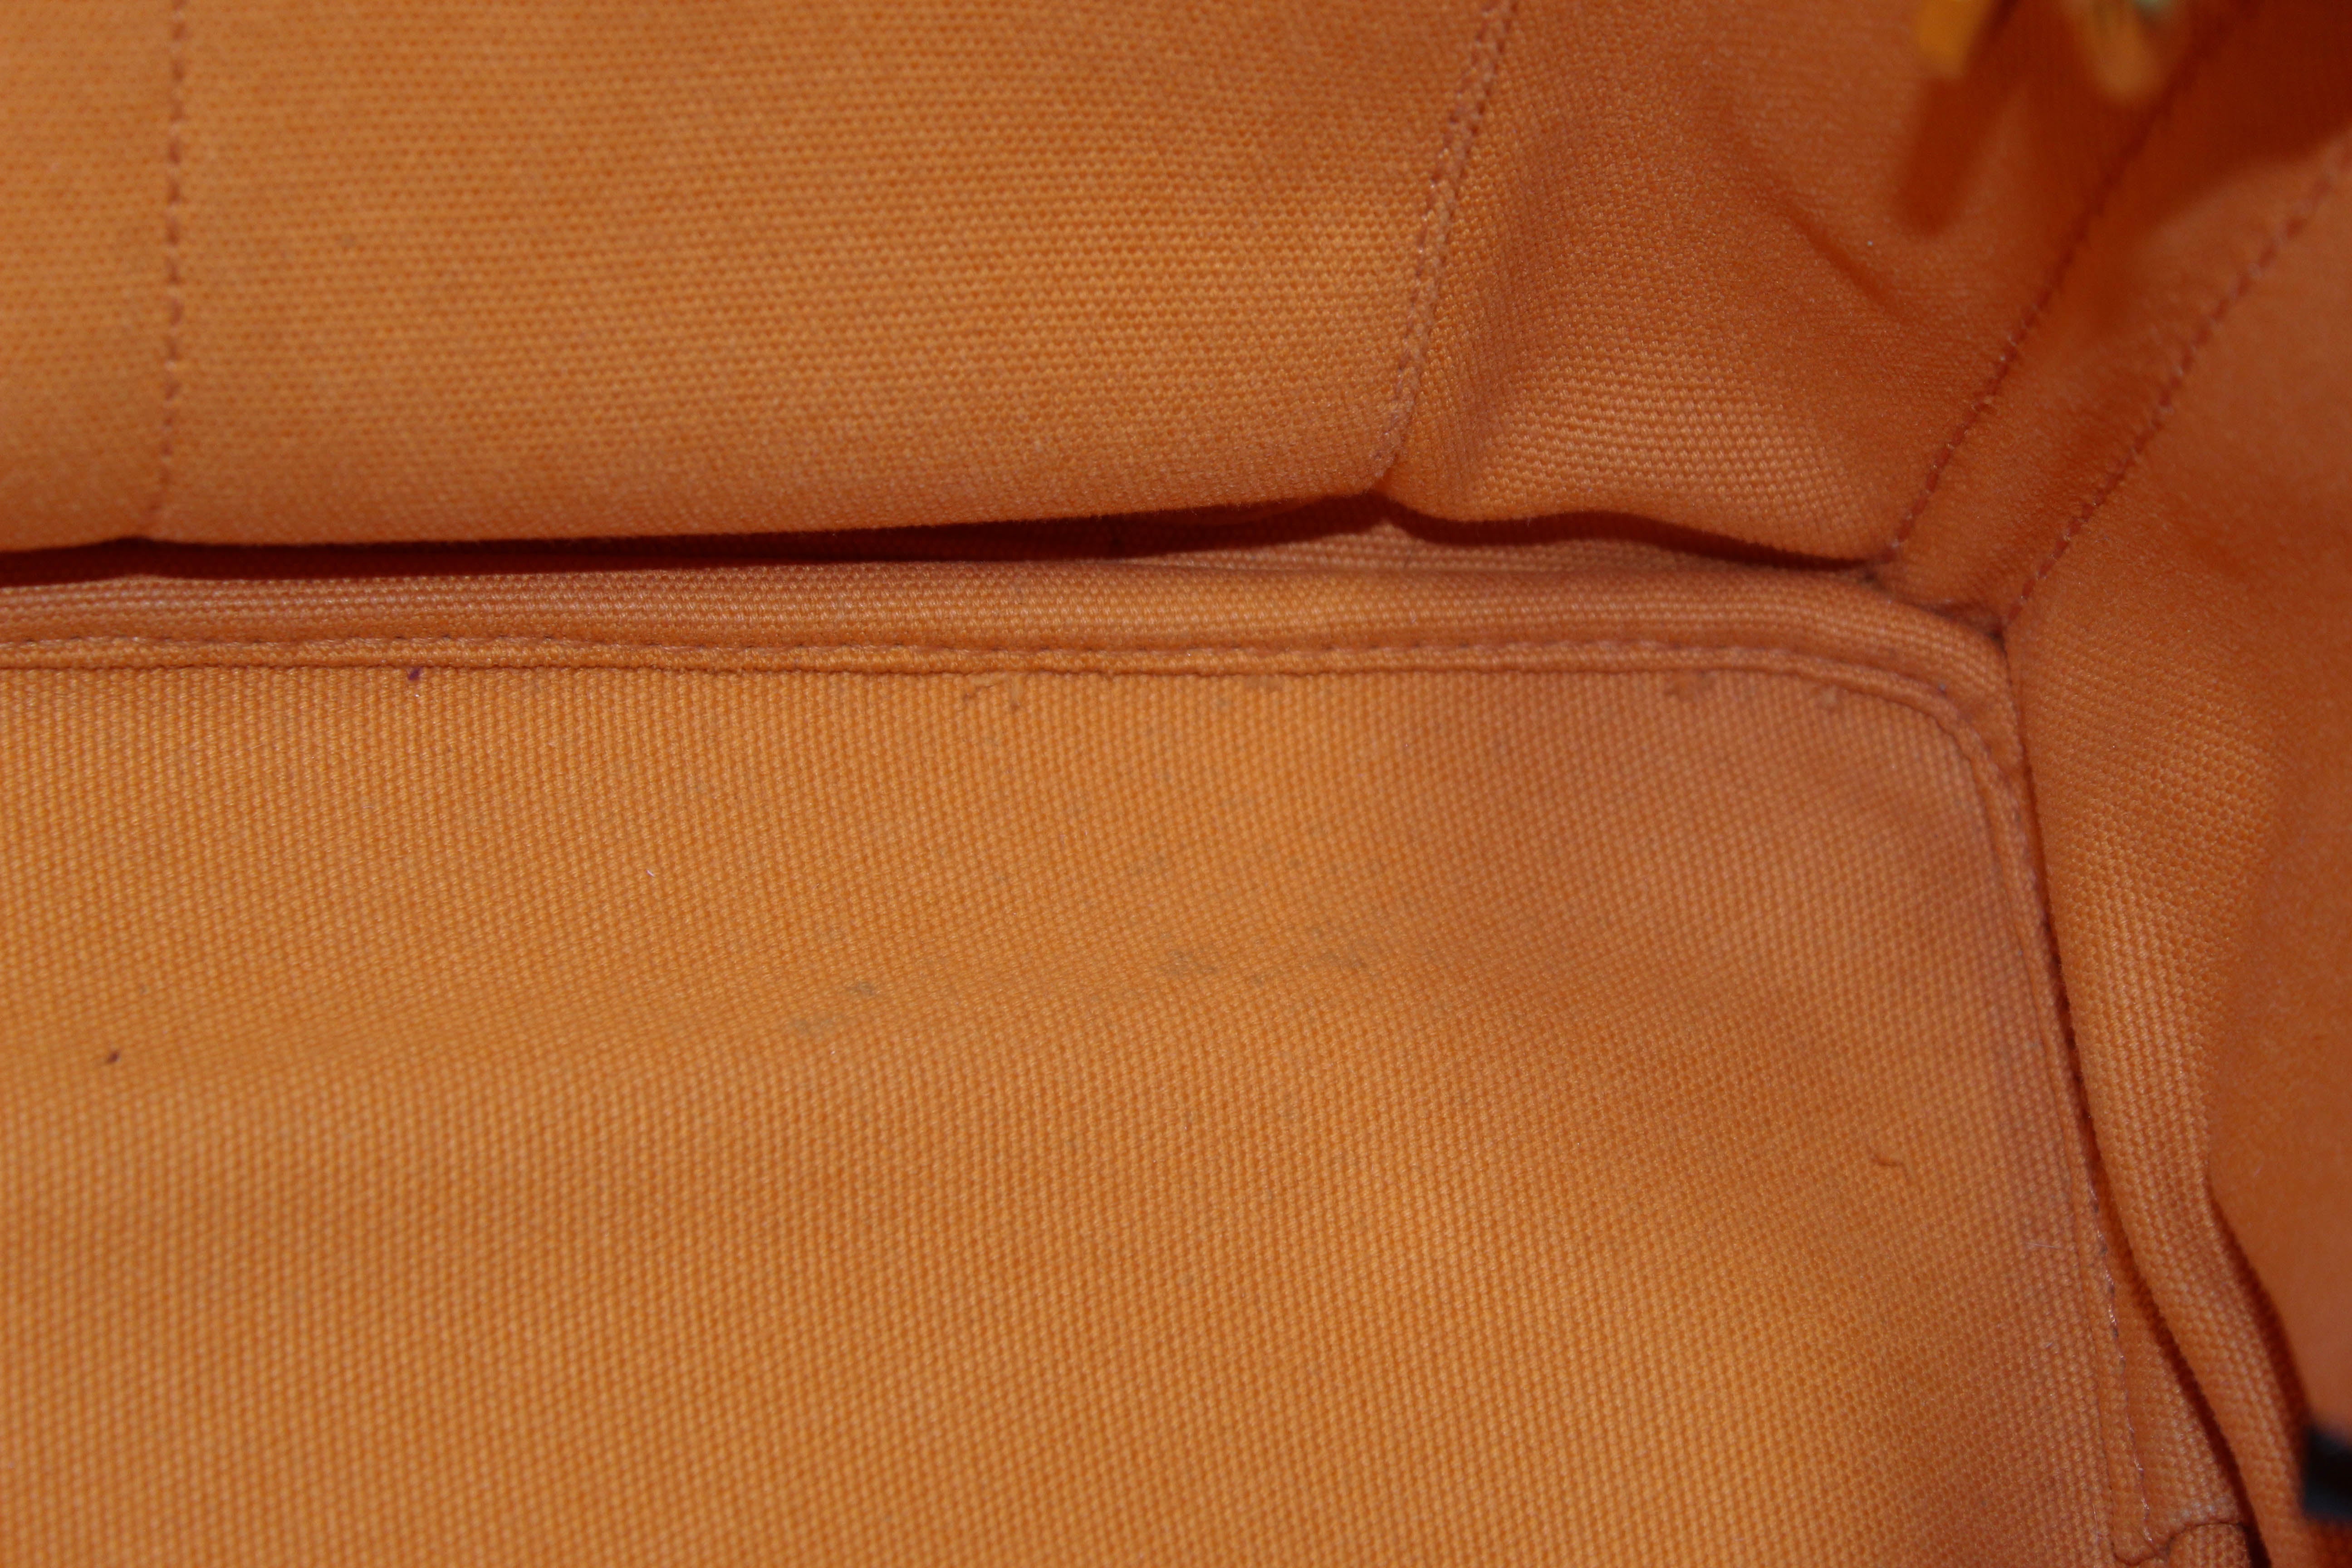 Authentic Prada Orange Canapa Canvas Logo Tote Bag